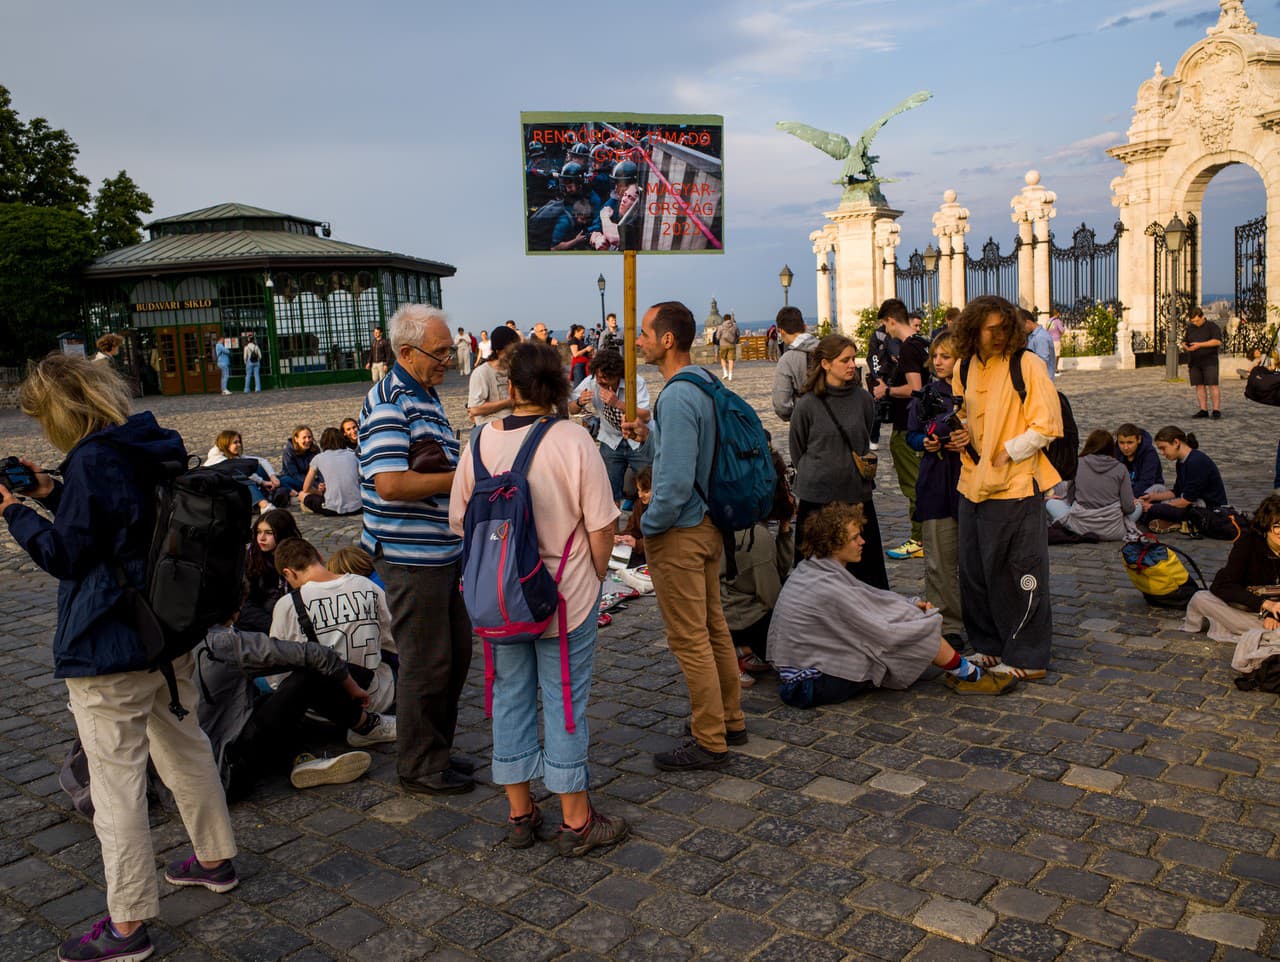 Desiatky demonštrantov sa zišli  pri budínskom Sándorovom paláci, v ktorom sídli hlava štátu, aby od prezidentky Katalin Novákovej žiadali vetovanie avizovaného zákona o právnom postavení pedagógov.